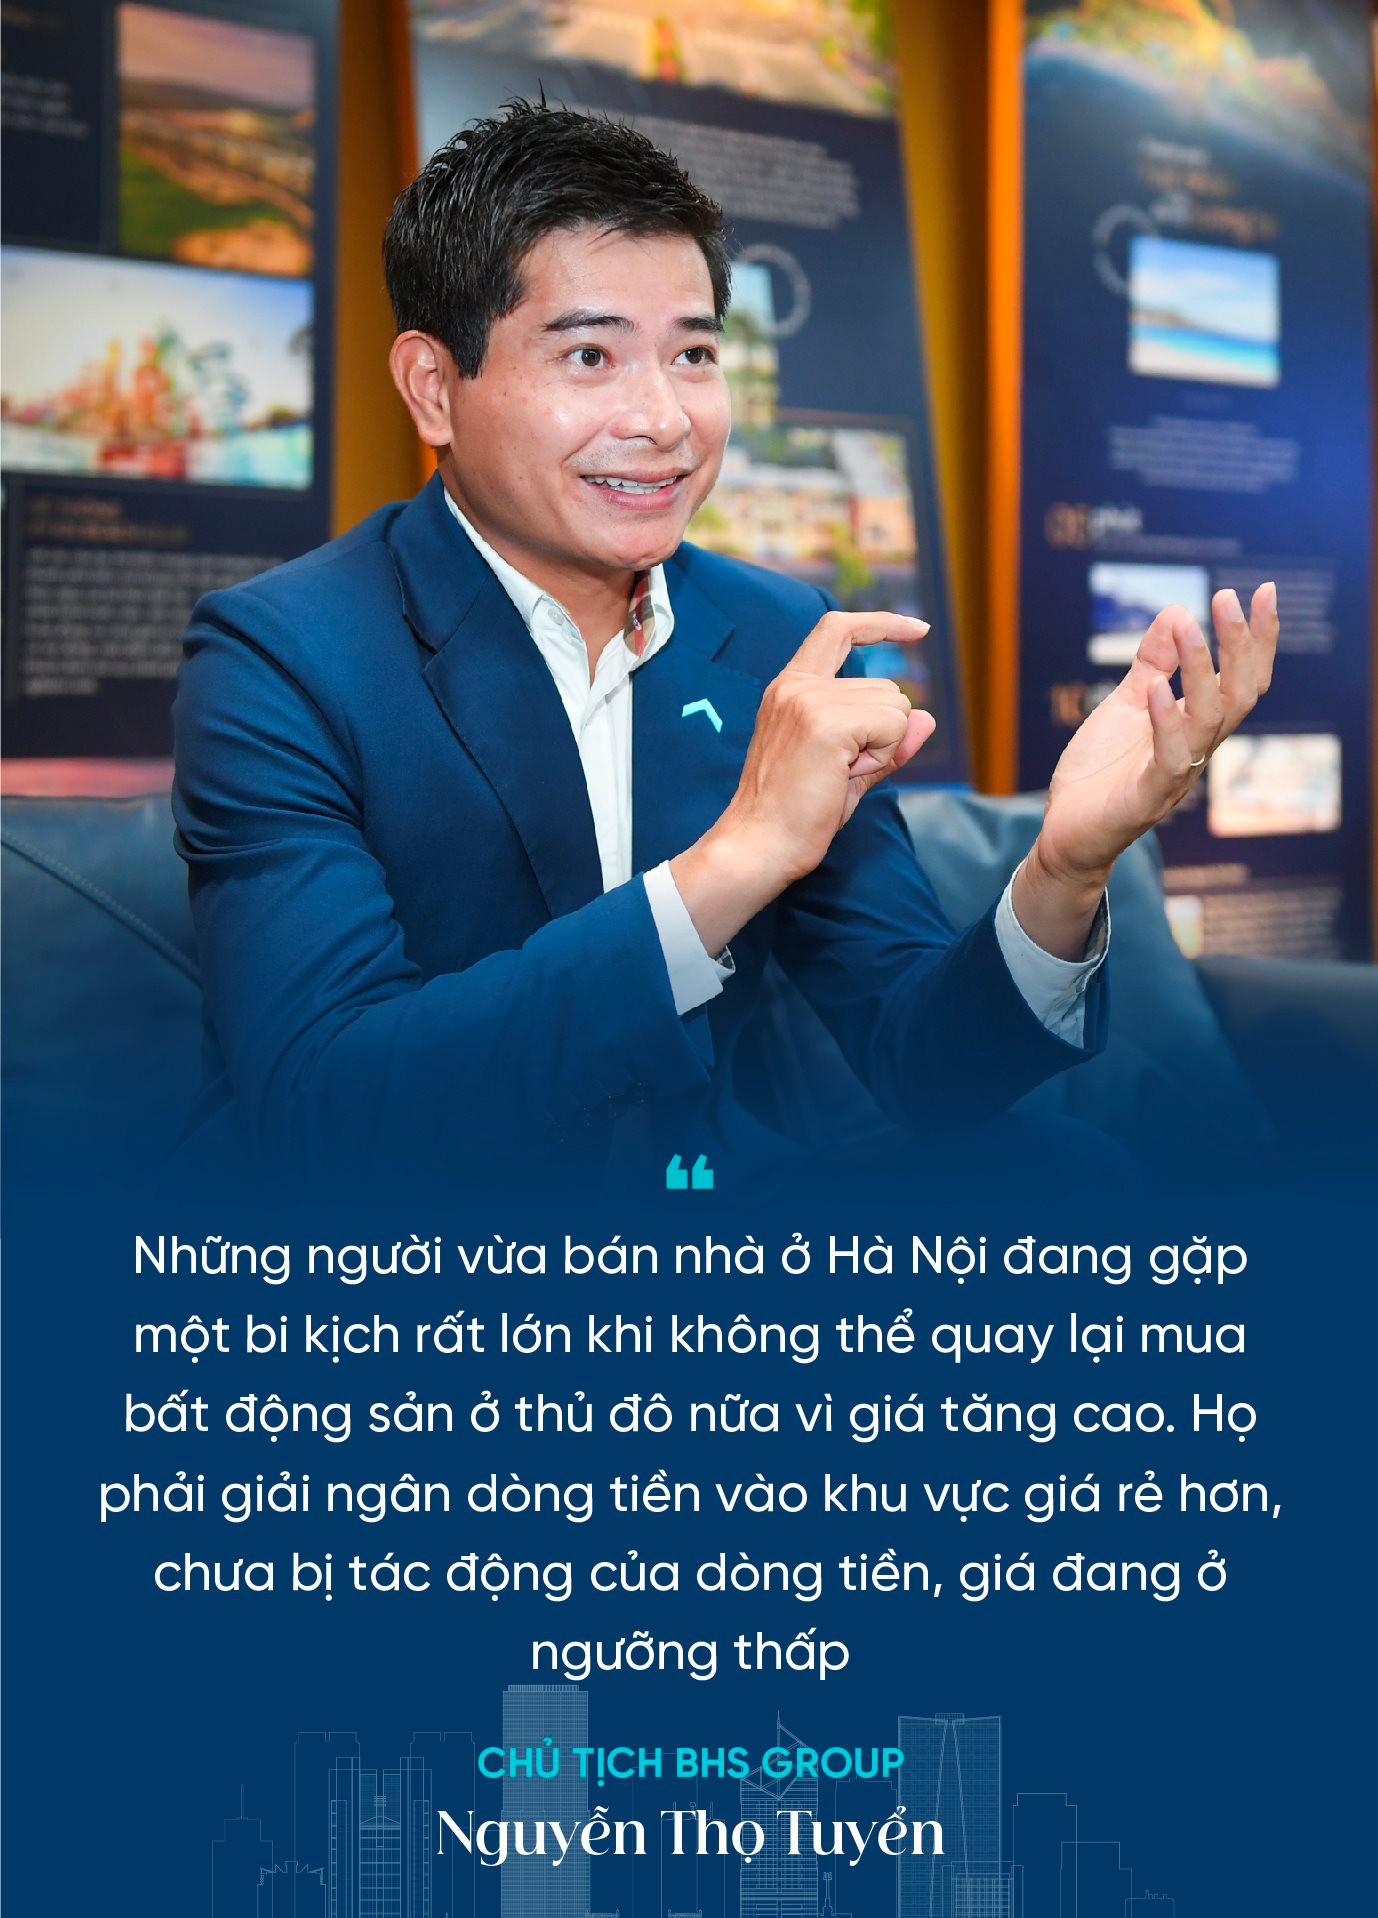 Chủ tịch BHS Group Nguyễn Thọ Tuyển: Dòng tiền lớn như một quả bom nguyên tử đang “hâm nóng” bất động sản Hà Nội, tiếp theo sẽ kích nổ hàng loạt khu vực- Ảnh 5.